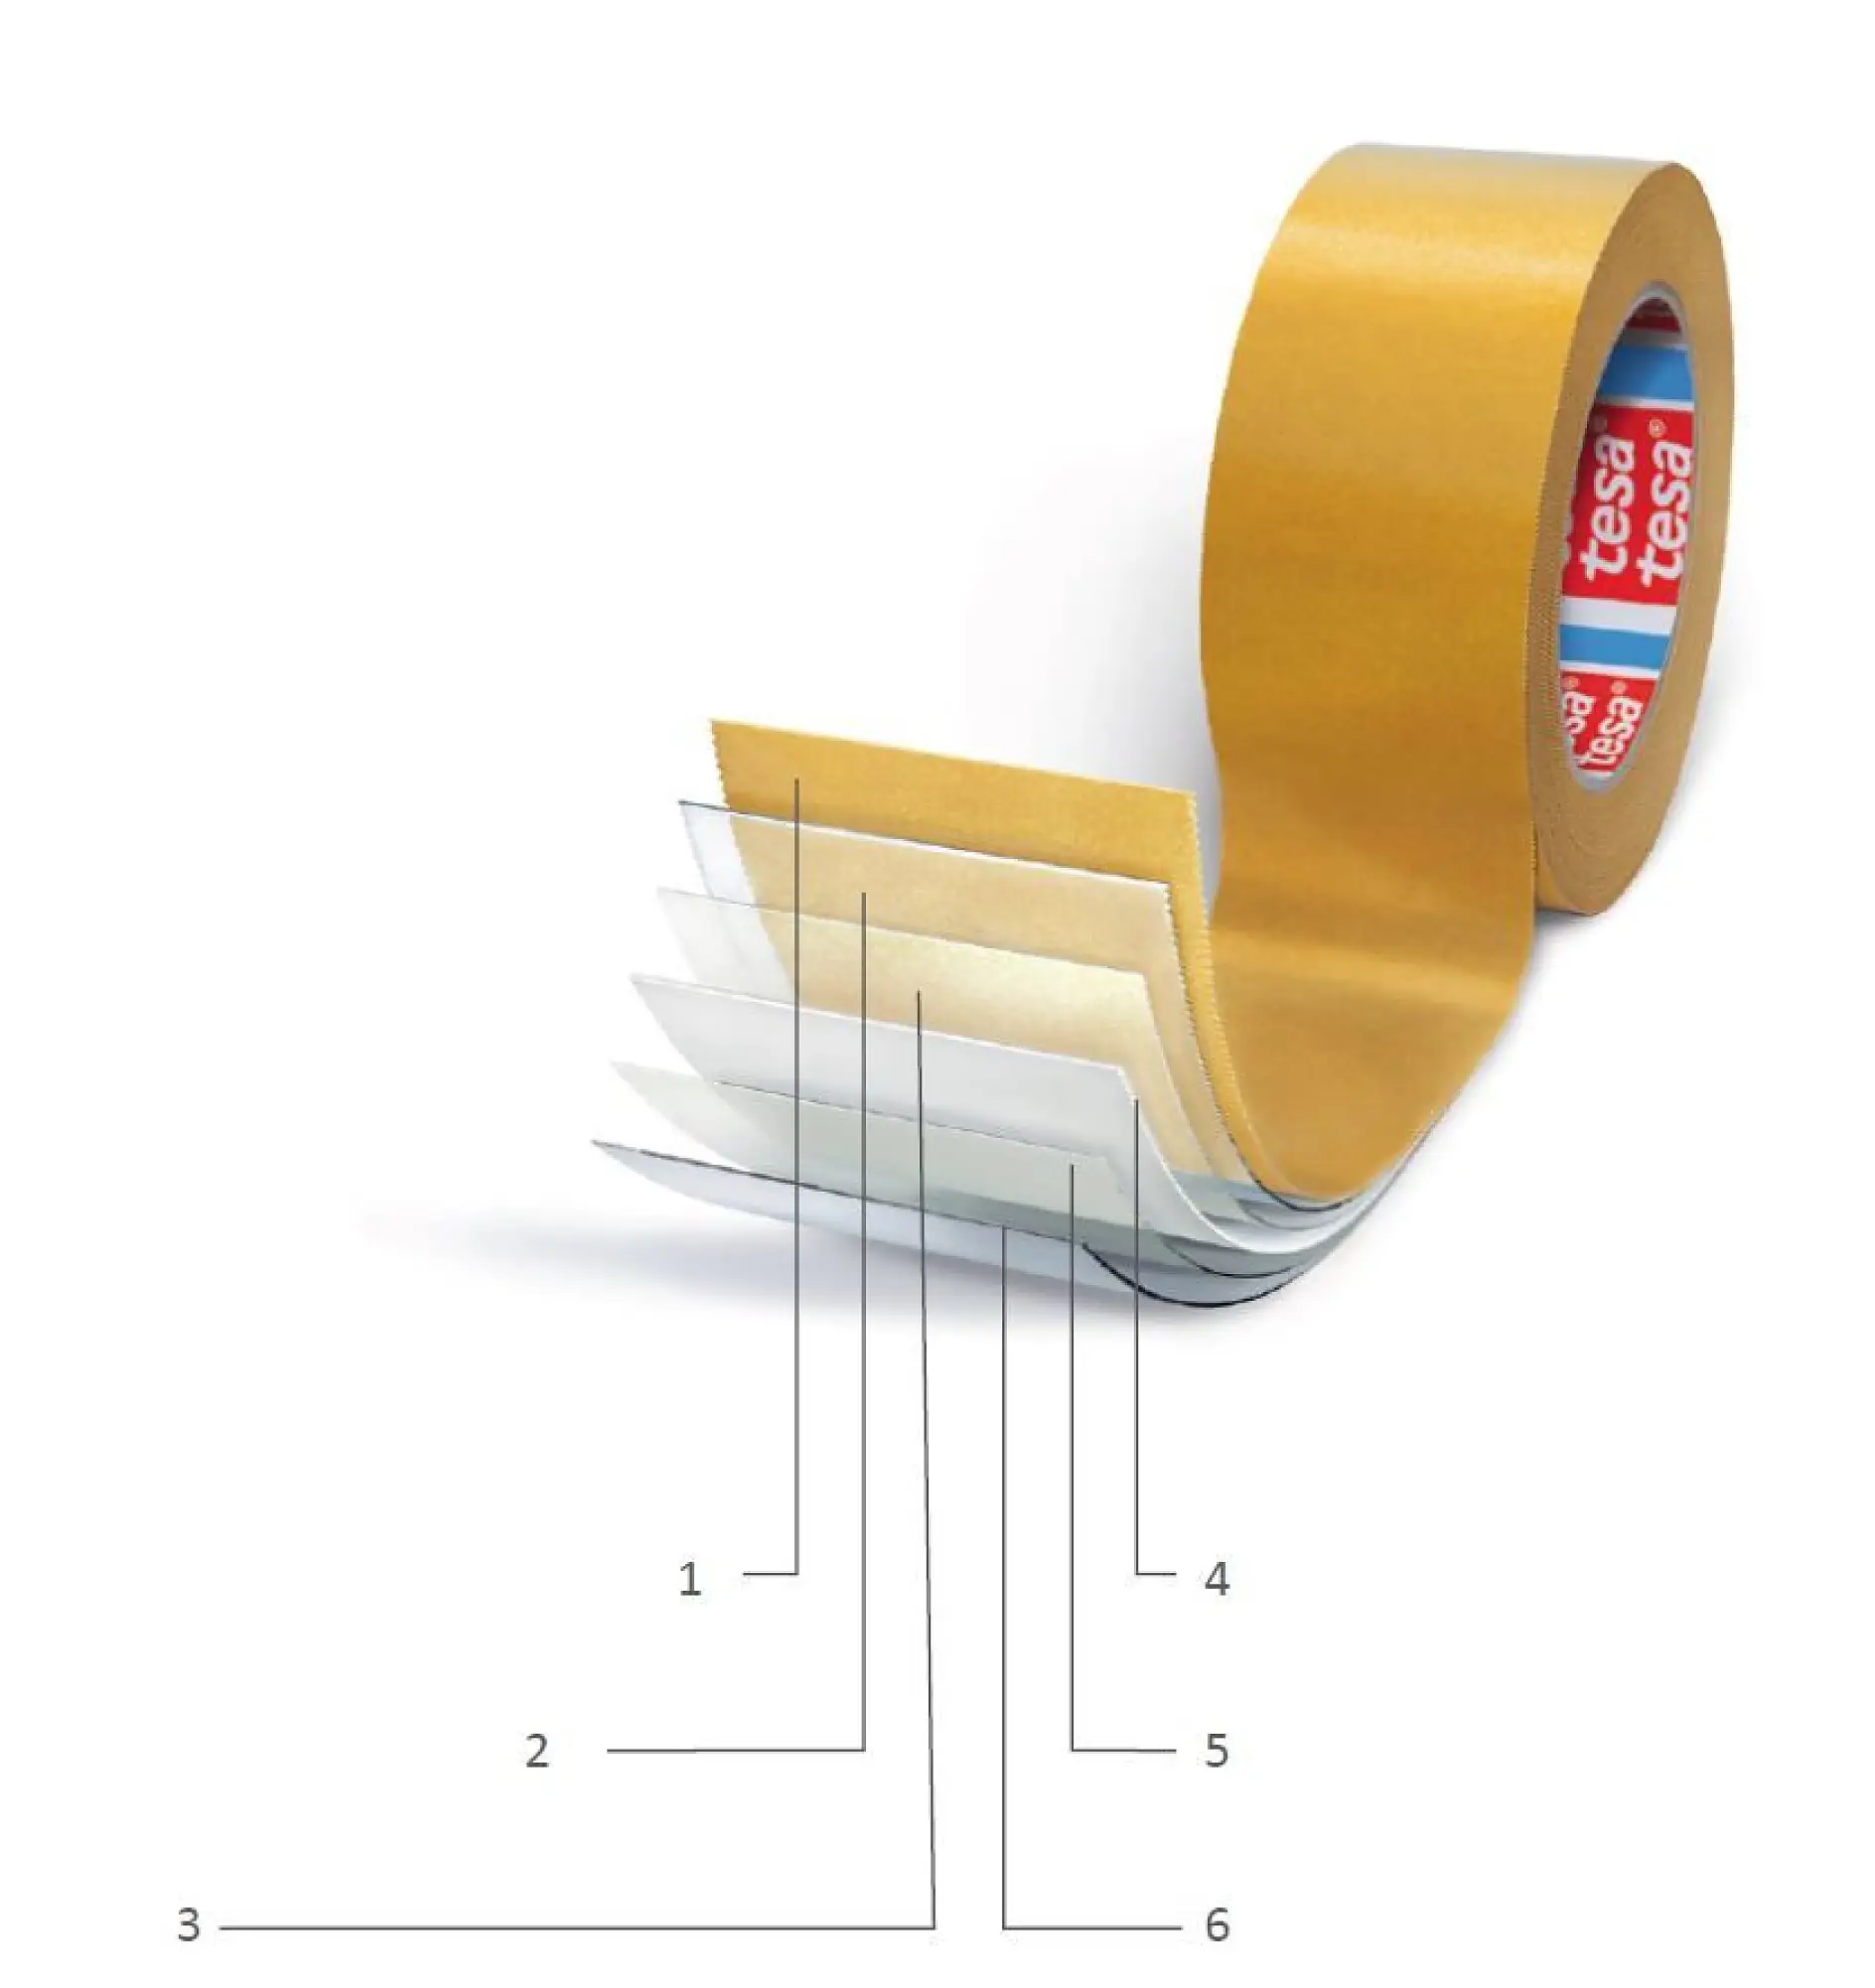 両面粘着テープの構造： 1）はくり紙（シリコンコーティング）、2）粘着剤（背面）、3）プライマ、4）裏張り、5）プライマ、6）粘着剤（表面）